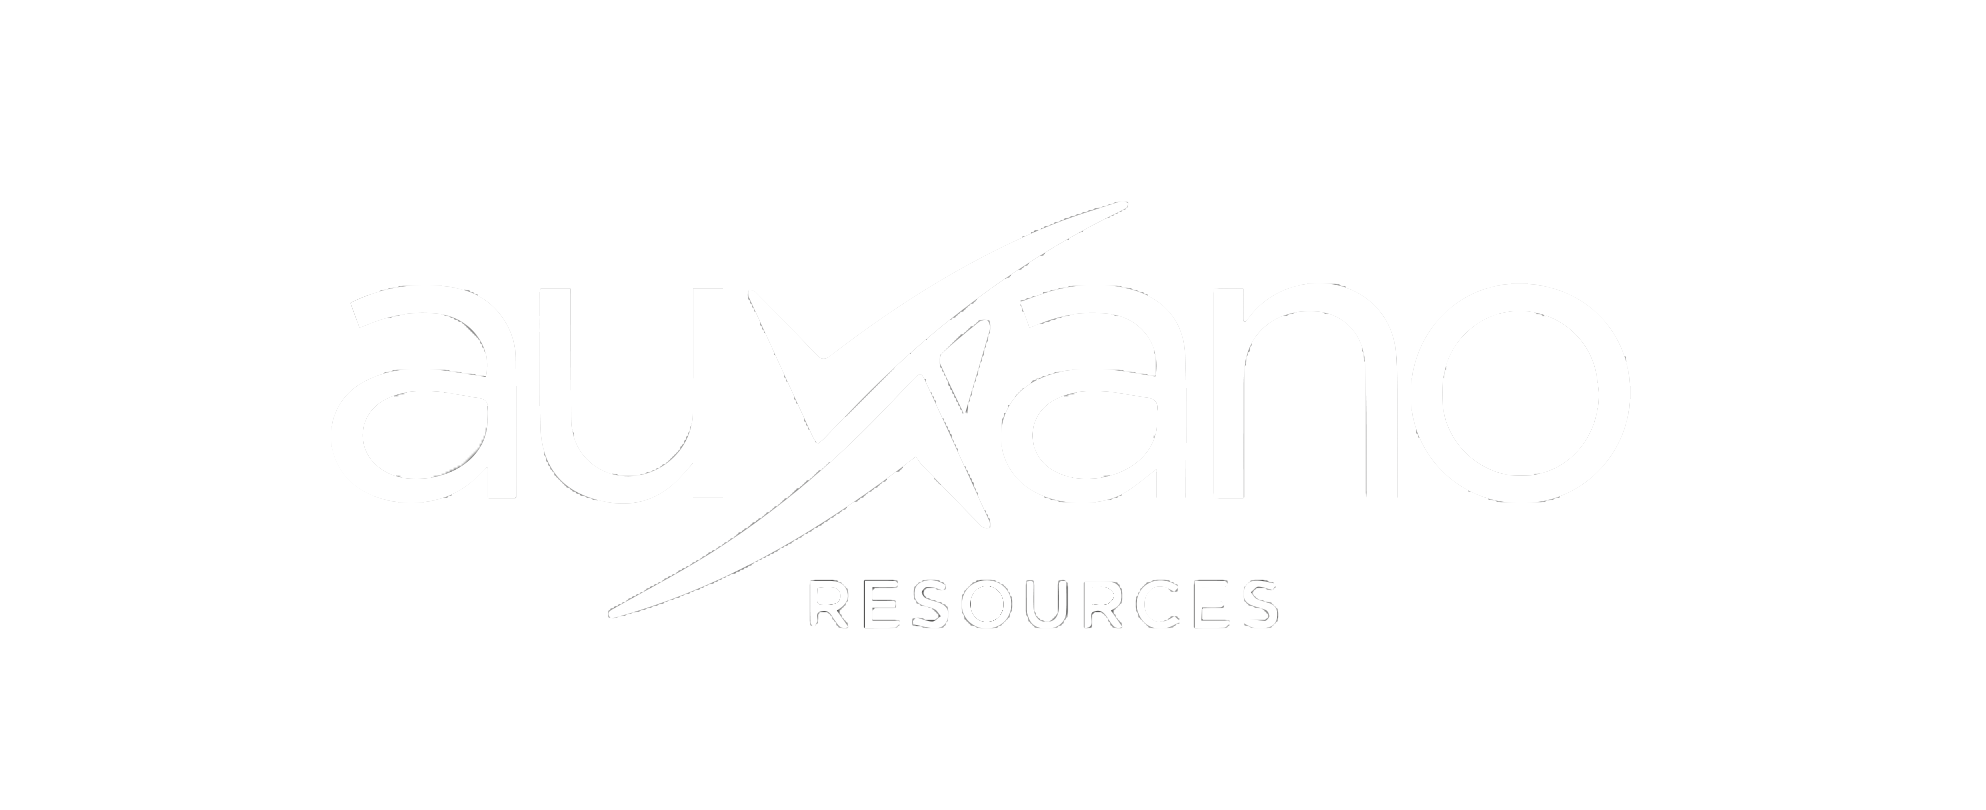 Auxano Resources